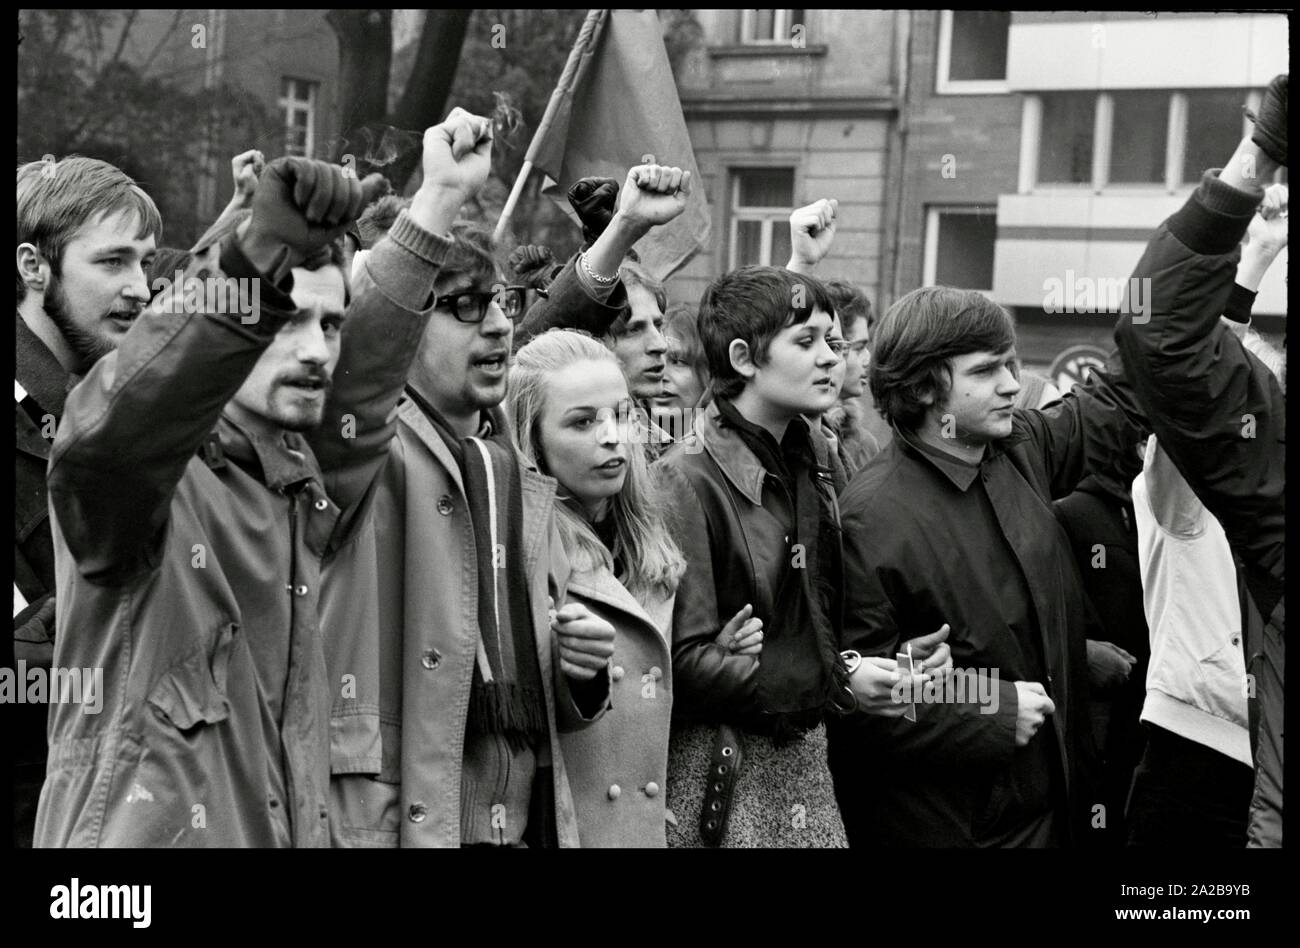 L'Allemagne. Francfort. 1.Février 1969 Environ 1000 étudiants de l'Université de Francfort rallye contre l'état d'urgence en Espagne. Auteur : Max Scheler/SZ Photo. Banque D'Images